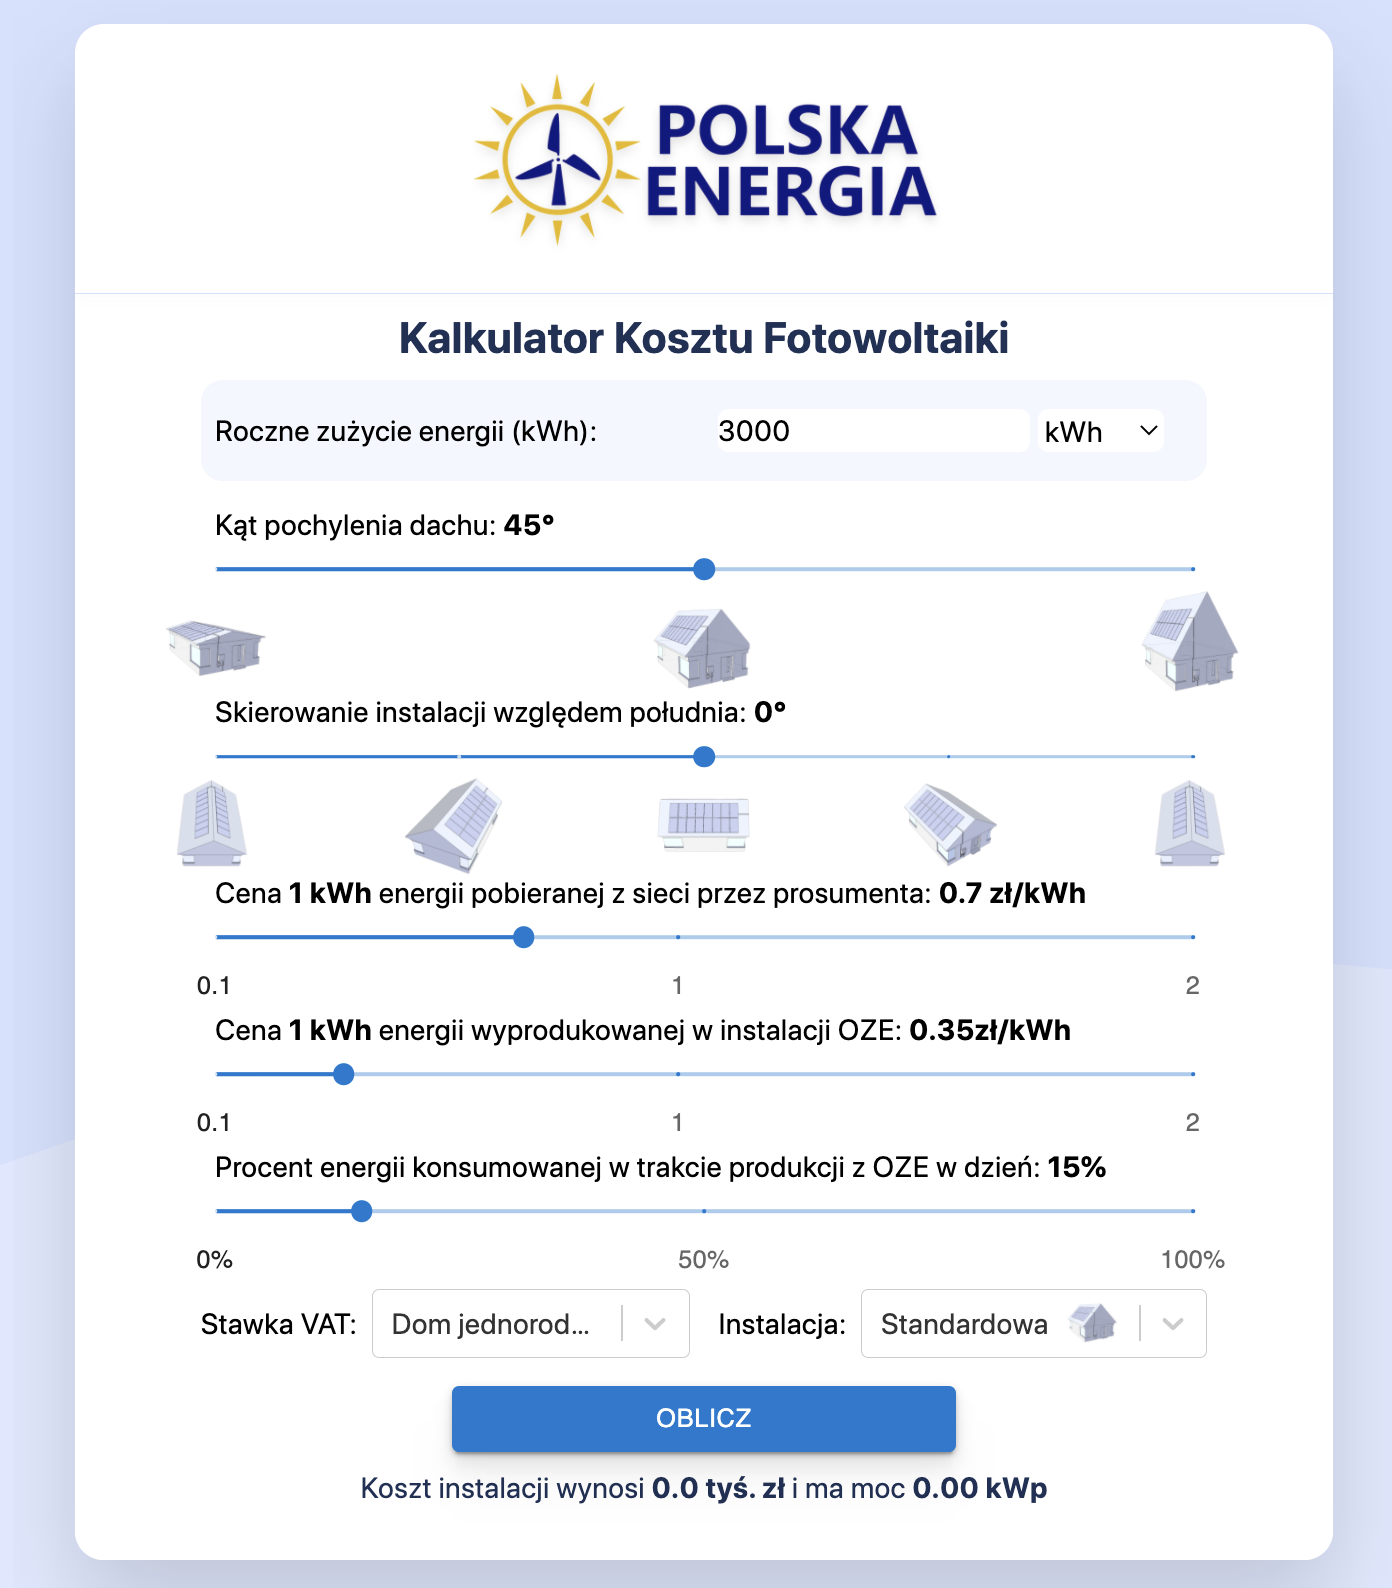 Kalkulator Kosztu Fotowoltaiki Polska Energia Andrychów Info Oświęcim pl polska-energia com